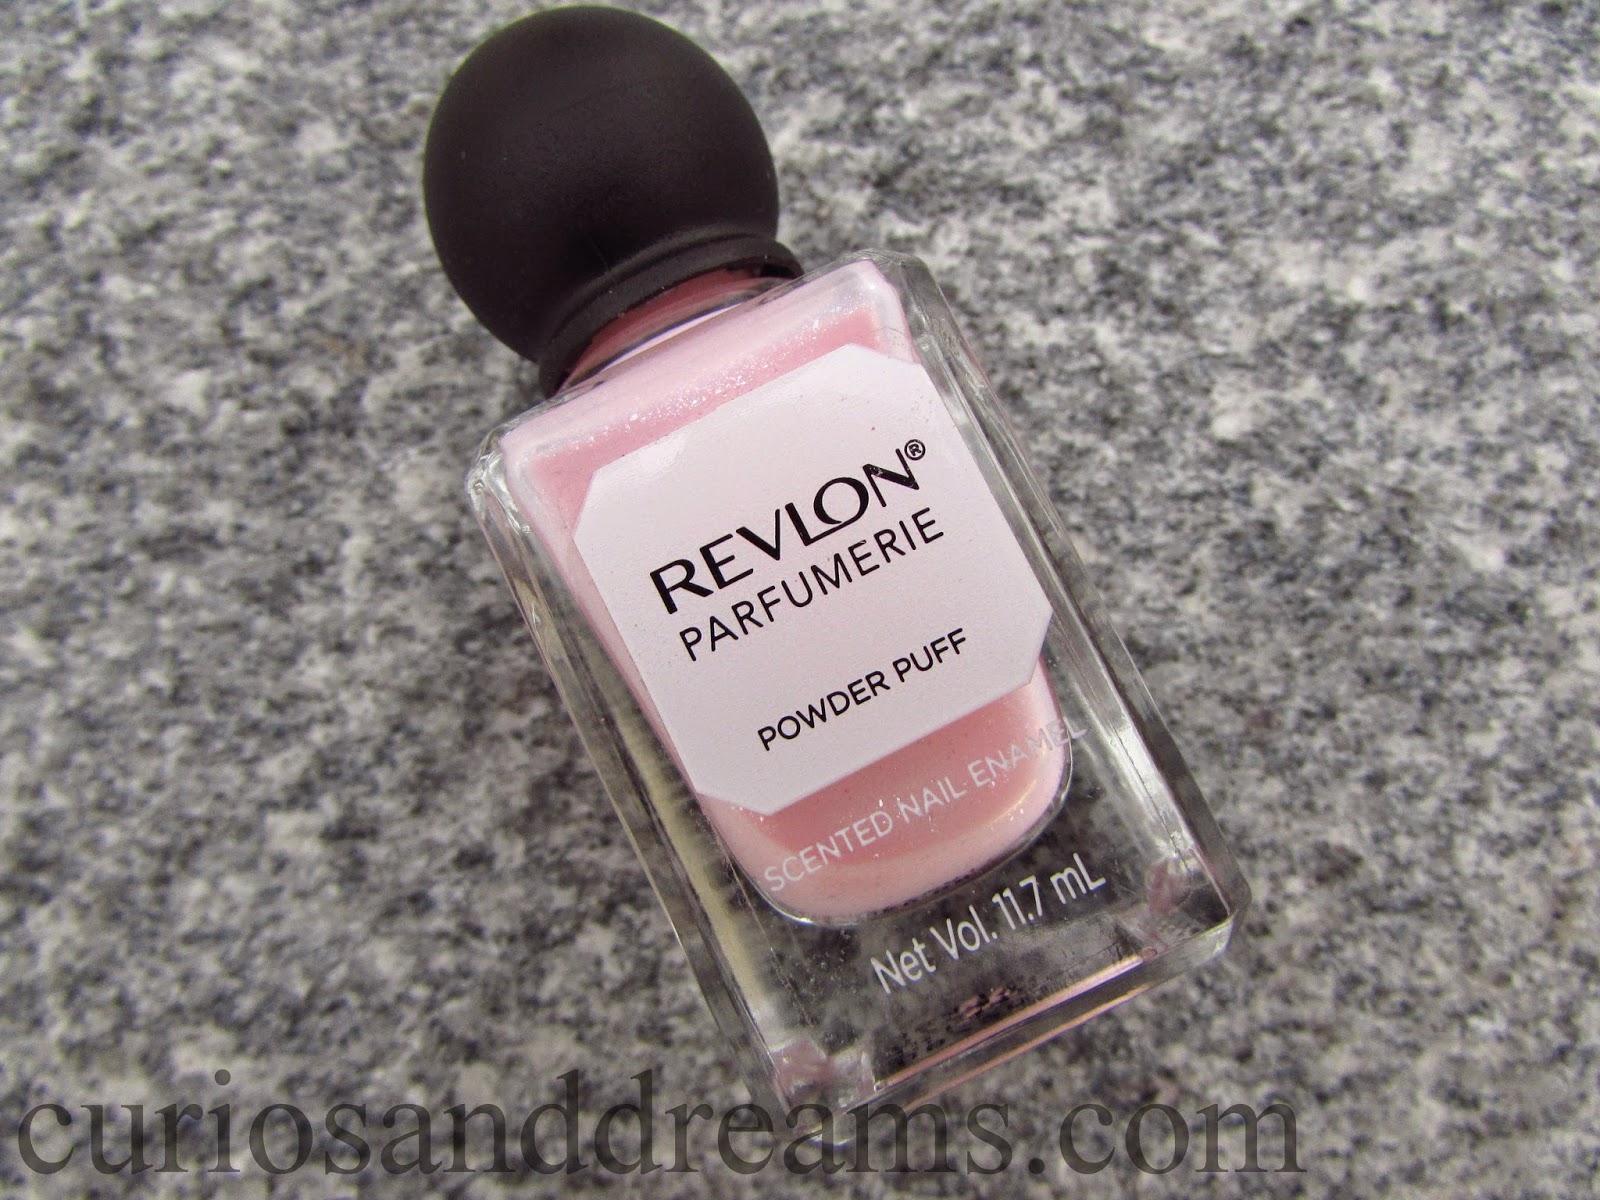 Revlon Parfumerie Powder Puff review,  Revlon Powder Puff review, Revlon Parfumerie Scented Nail Enamel, Powder Puff swatch